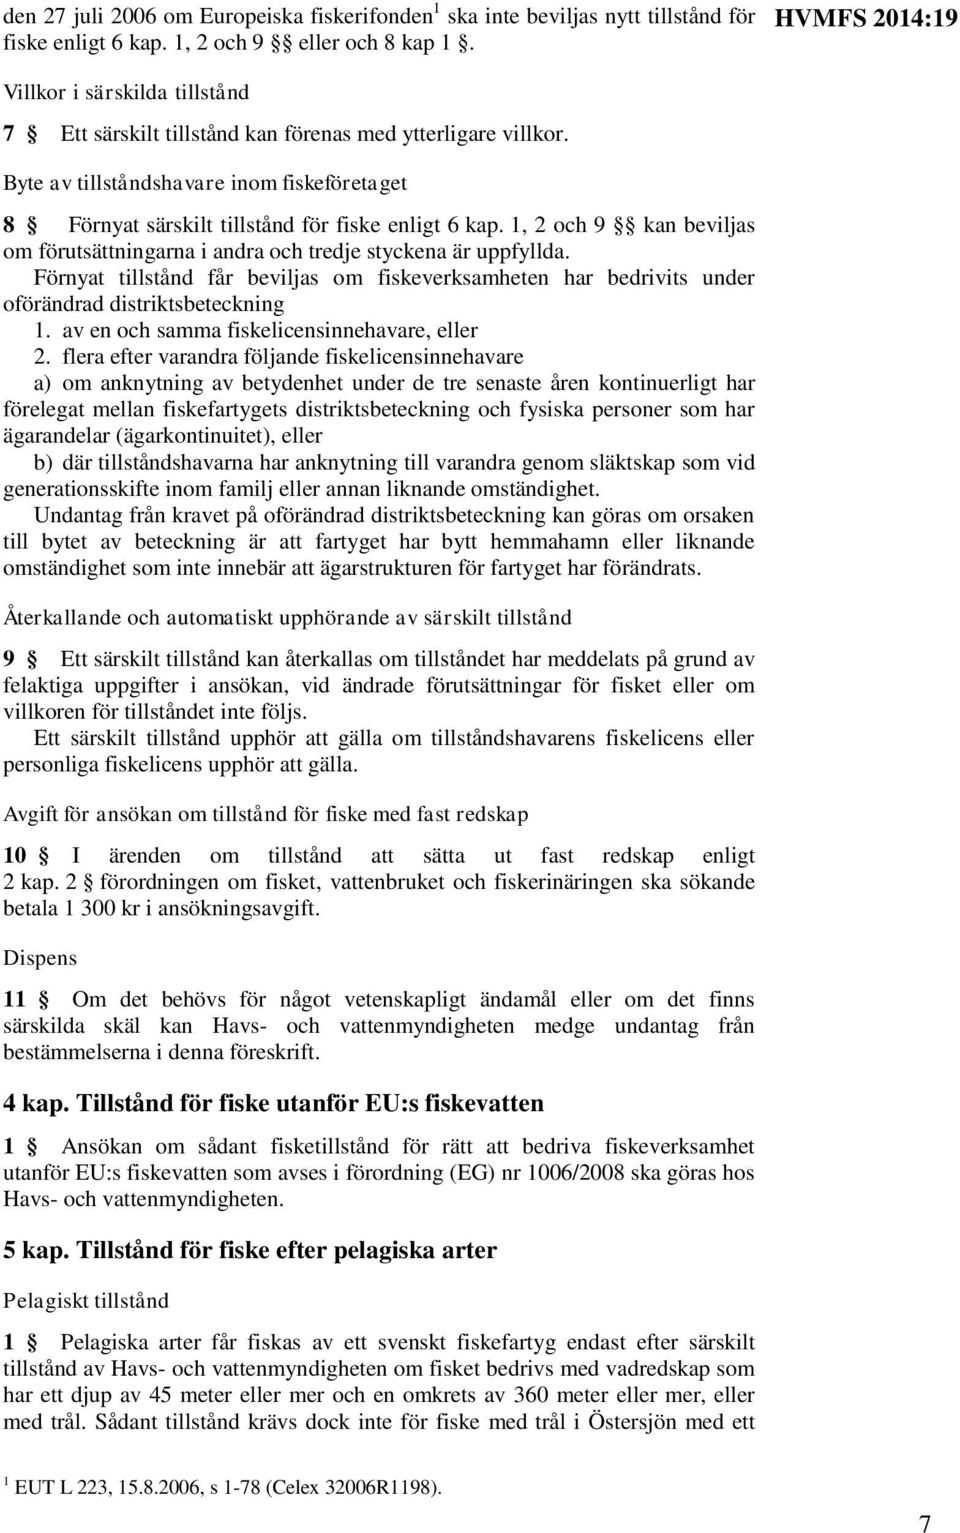 Byte av tillståndshavare inom fiskeföretaget 8 Förnyat särskilt tillstånd för fiske enligt 6 kap. 1, 2 och 9 kan beviljas om förutsättningarna i andra och tredje styckena är uppfyllda.